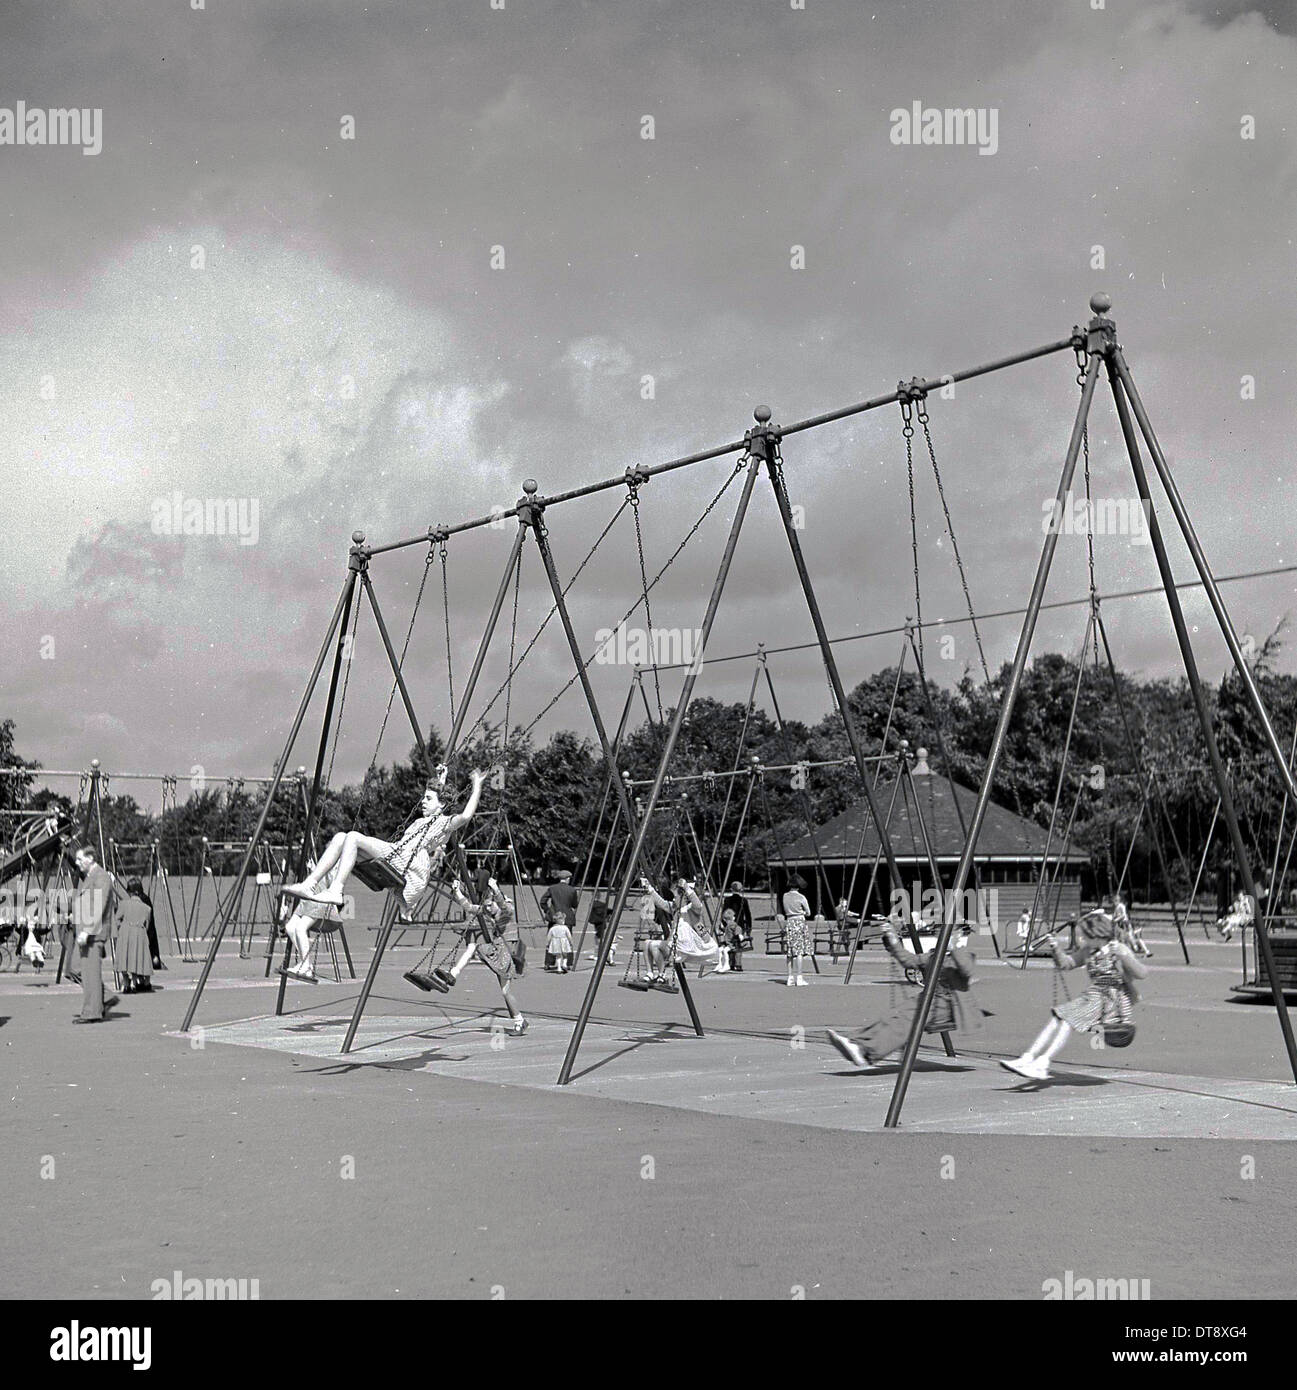 Photo historique de 1960 montrant les enfants de l'école profitant du type traditionnel des balançoires dans un terrain de jeux. Banque D'Images